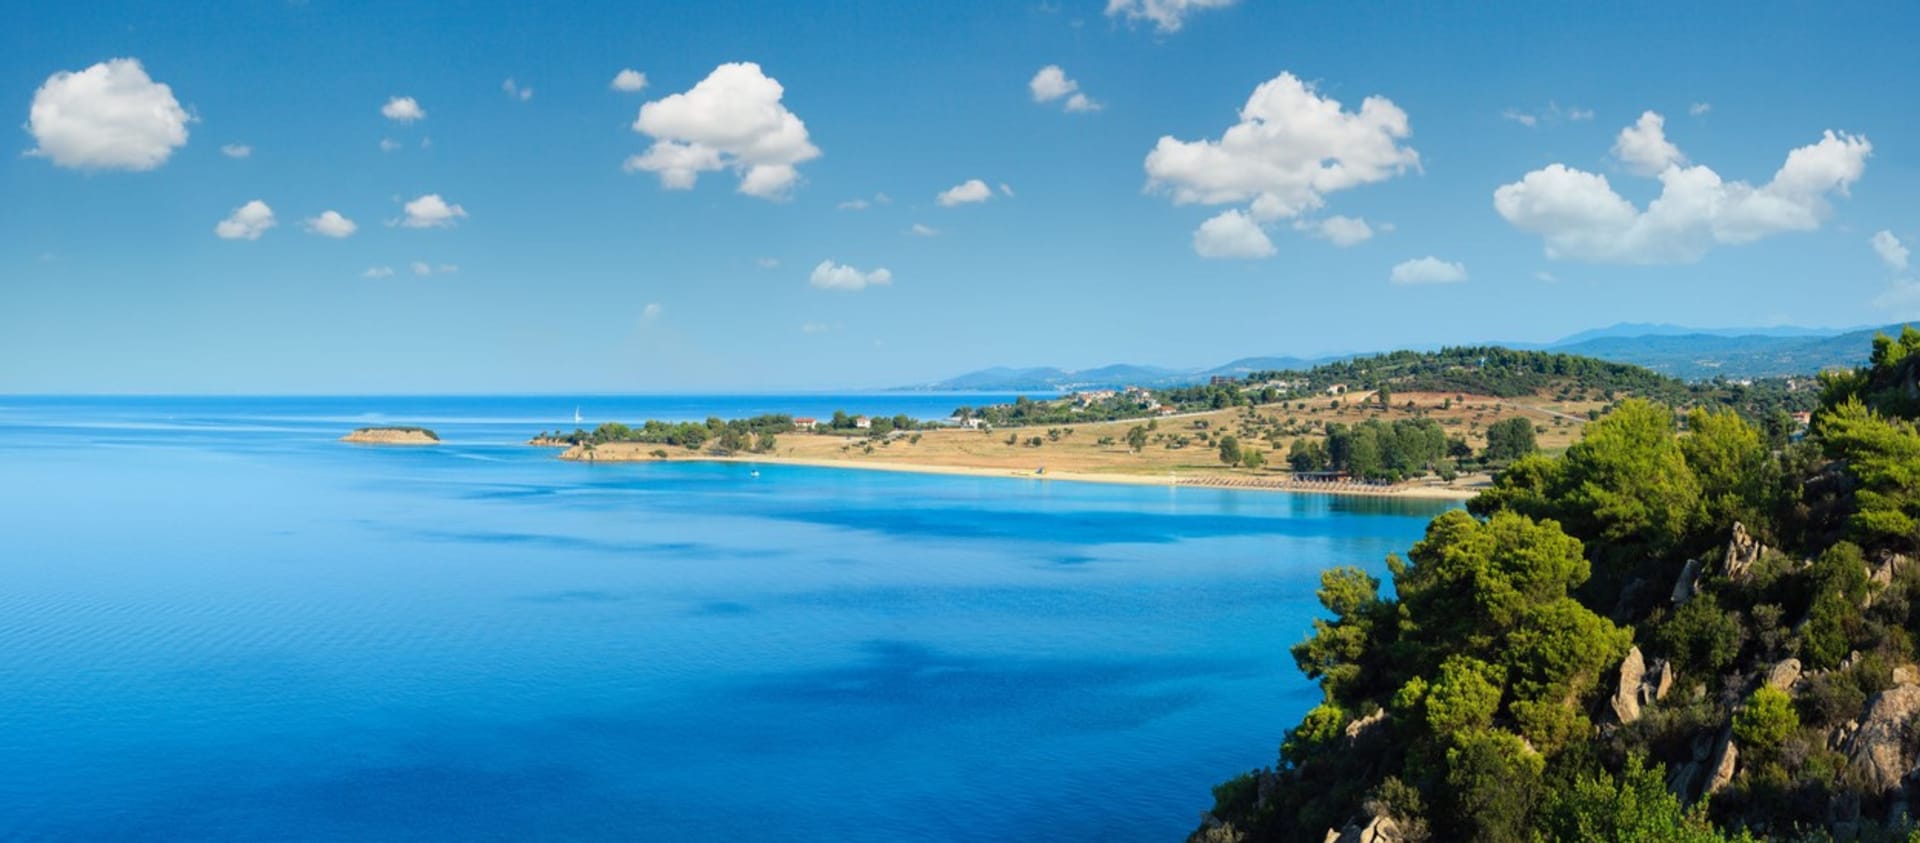 Řecko dlouhodobě patří mezi jednu z nejoblíbenějších destinací pro letní dovolenou. Za zájmem stojí zejména vyhlášené ostrovy, krásné moře i příjemné teploty.